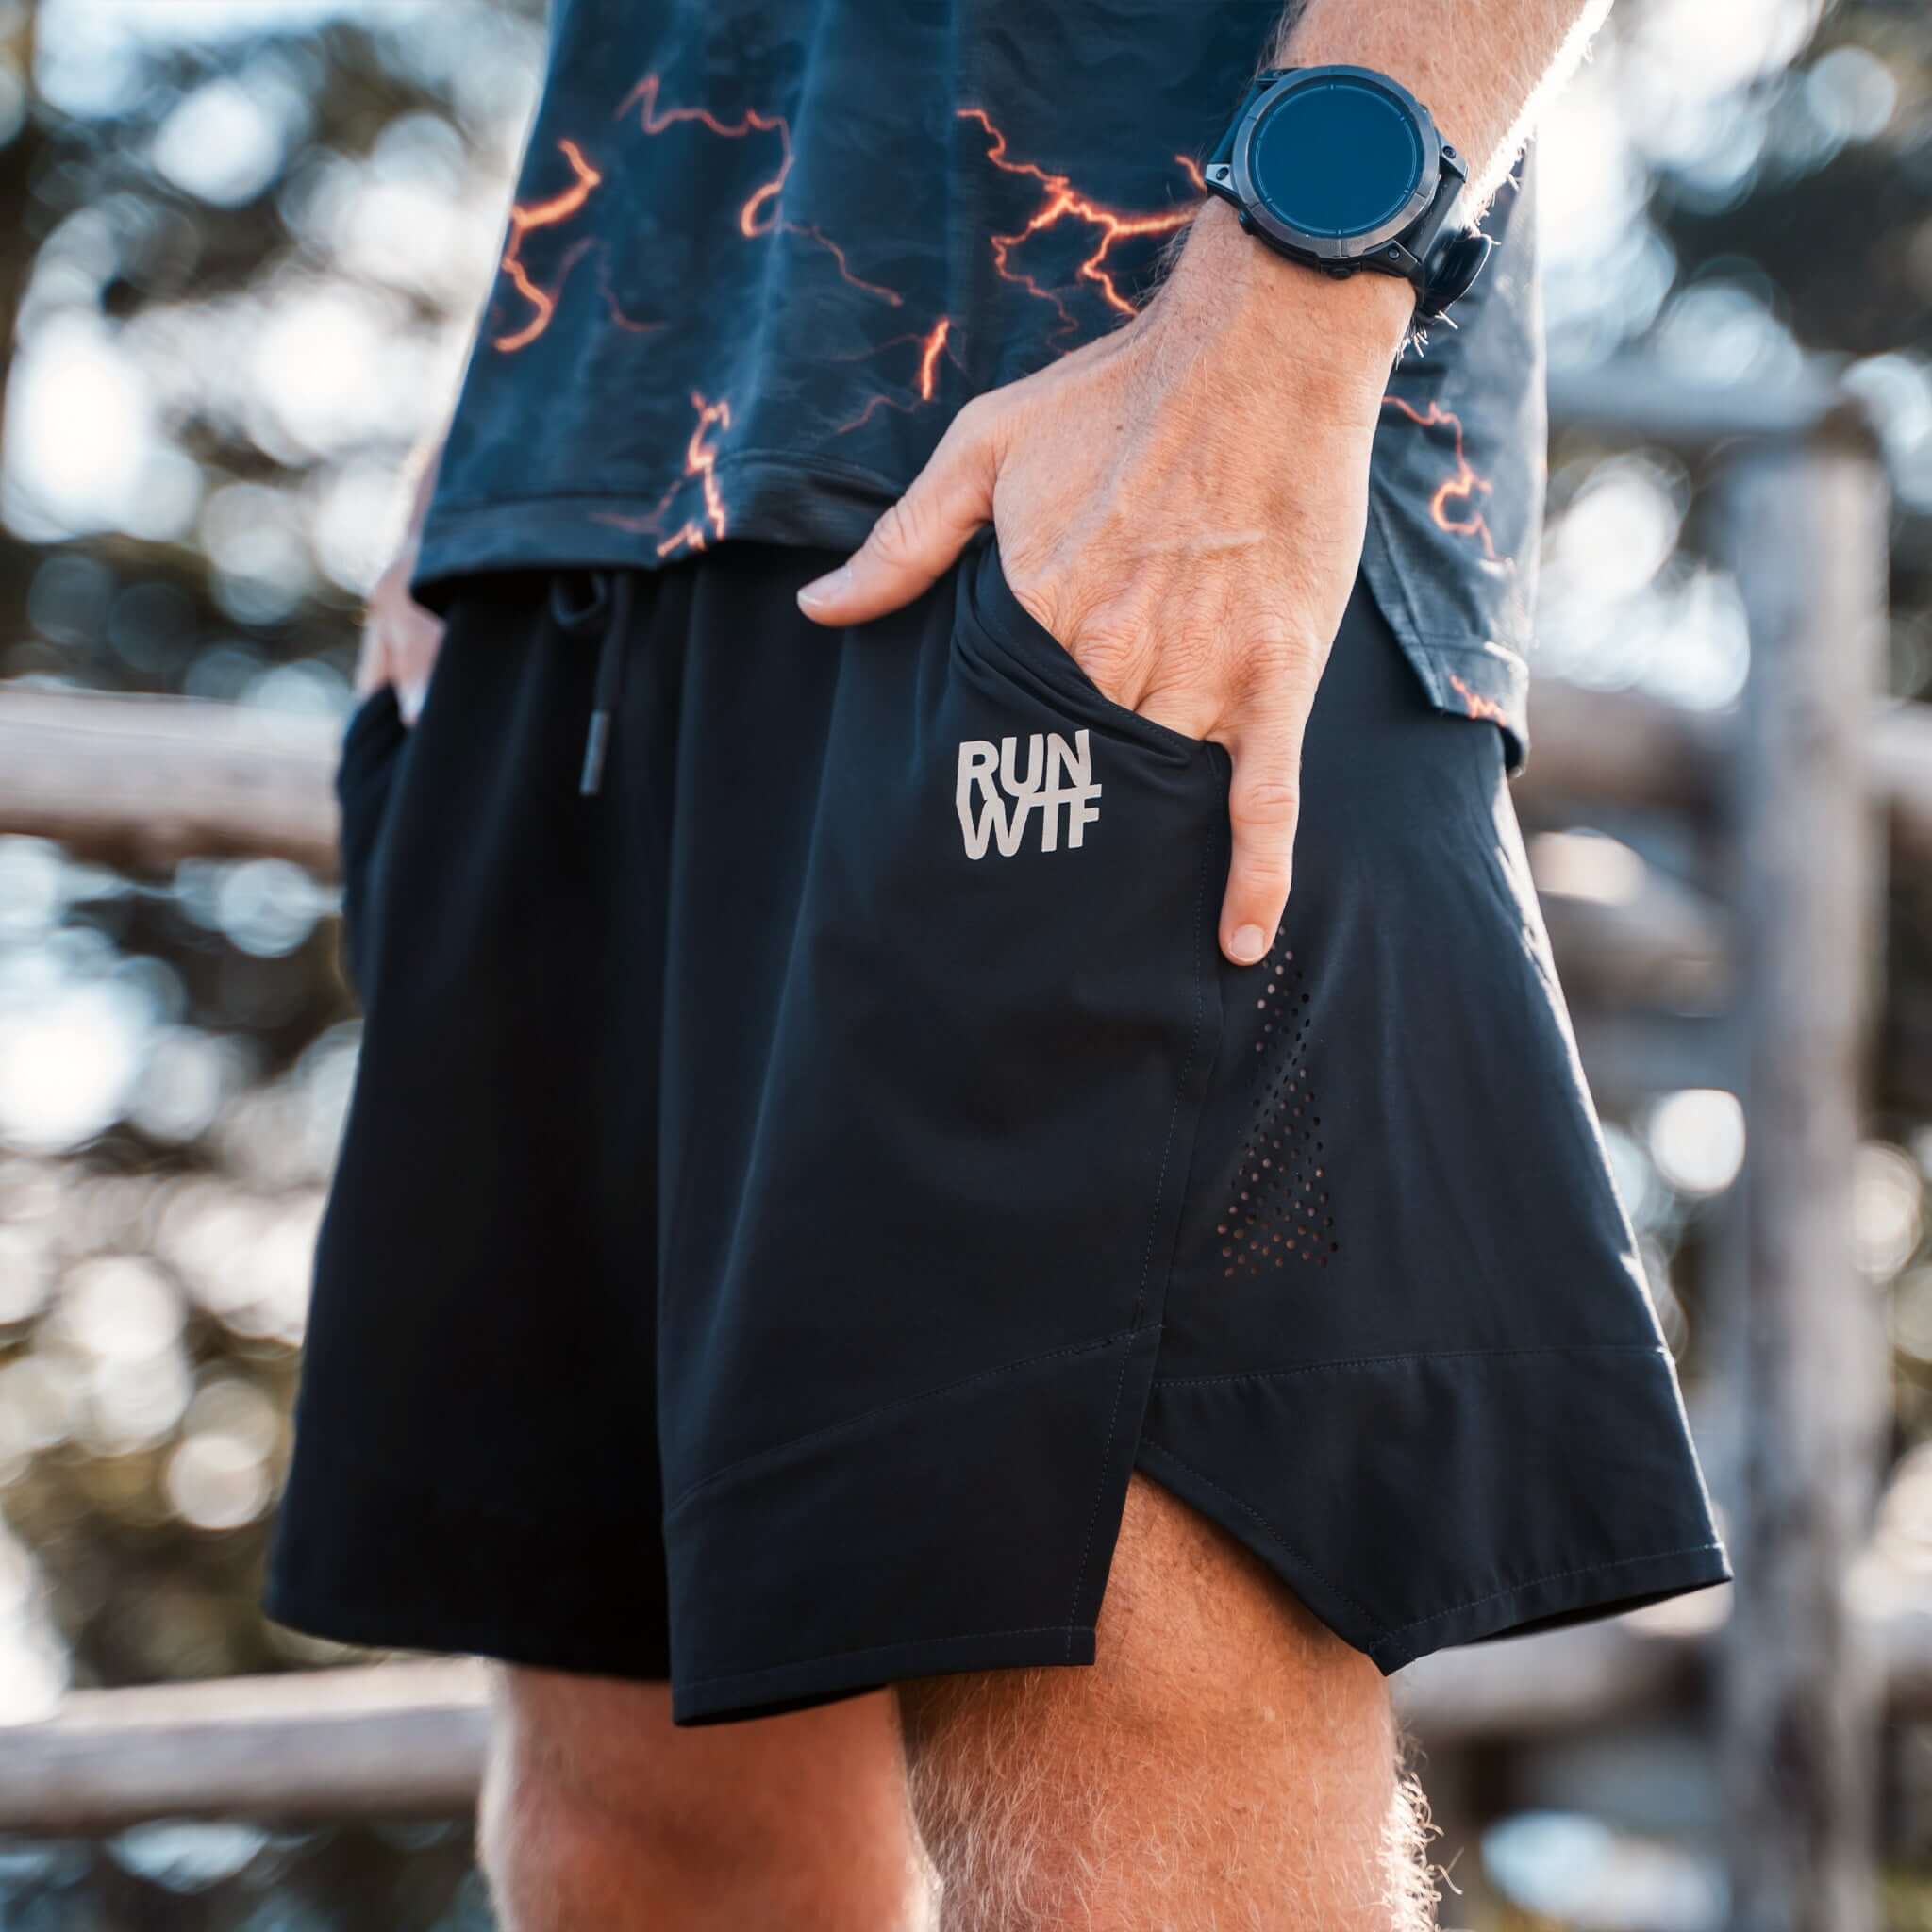 RUN WTF Running Apparel. Nachhaltige Laufbekleidung entwickelt von Ultraläufer Flo Neuschwander. Laufshirts, Shorts, Jacken und Accessoires. . 